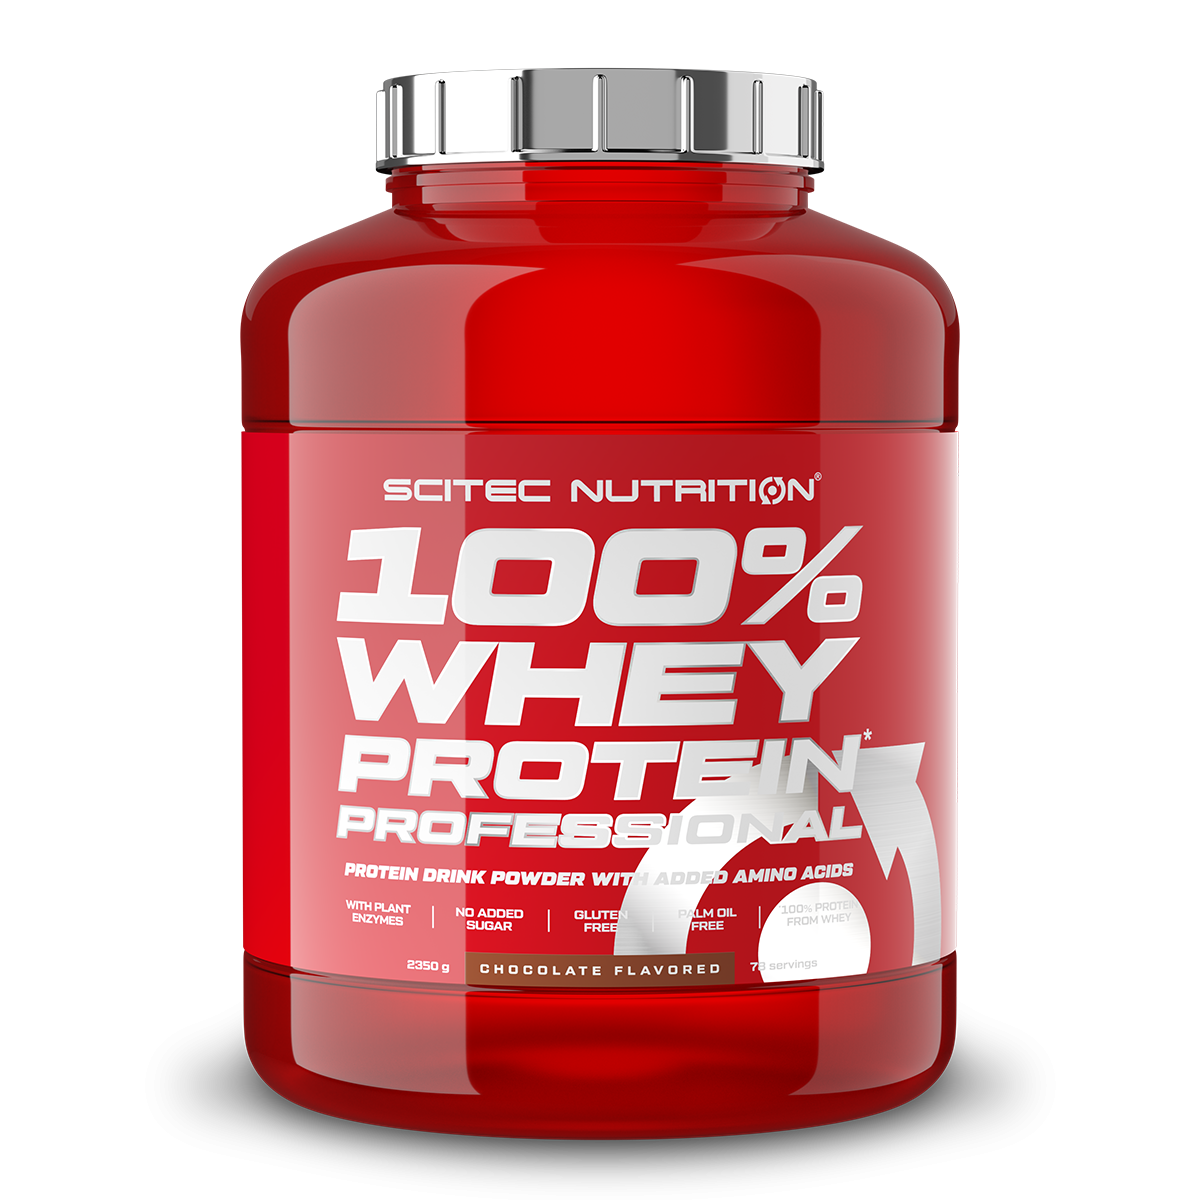 Scitec Nutrition 100% Whey Protein Professional mit extra zusätzlichen Aminosäuren und Verdauungsenzymen, Beinhaltet keinen Zuckerzusatz, 2.35 kg, Erdbeere